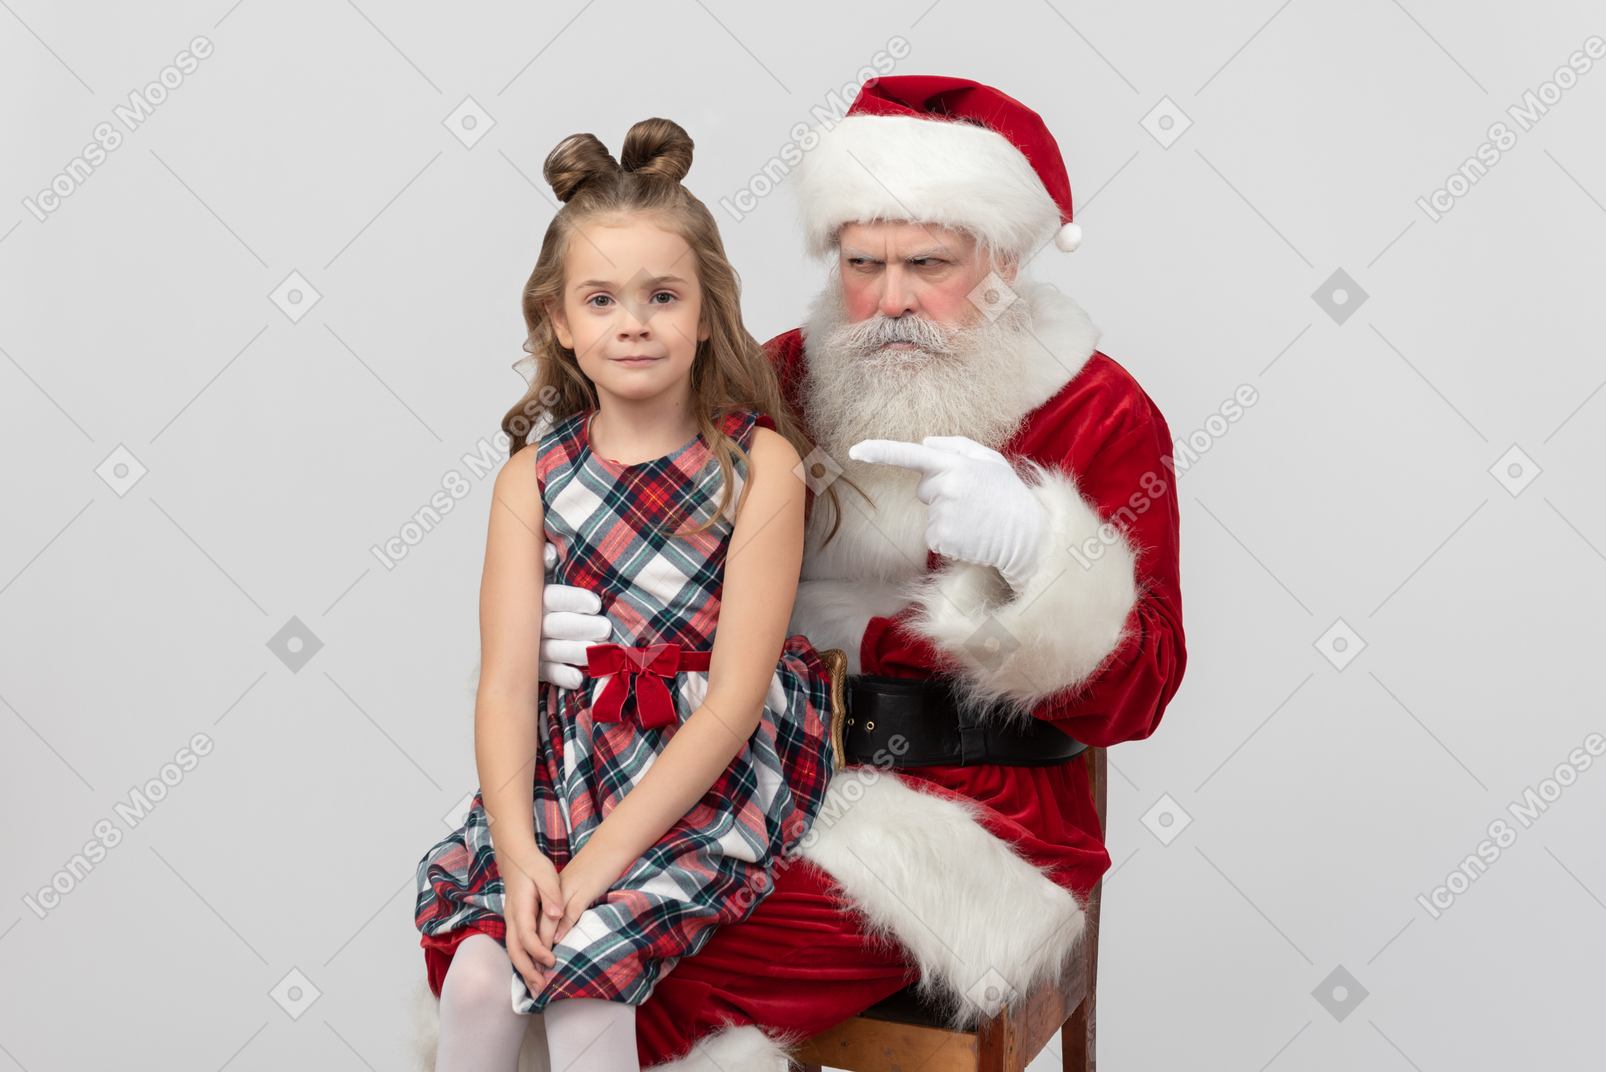 산타가 진짜가 아니라고 말 하지마, 꼬마 야